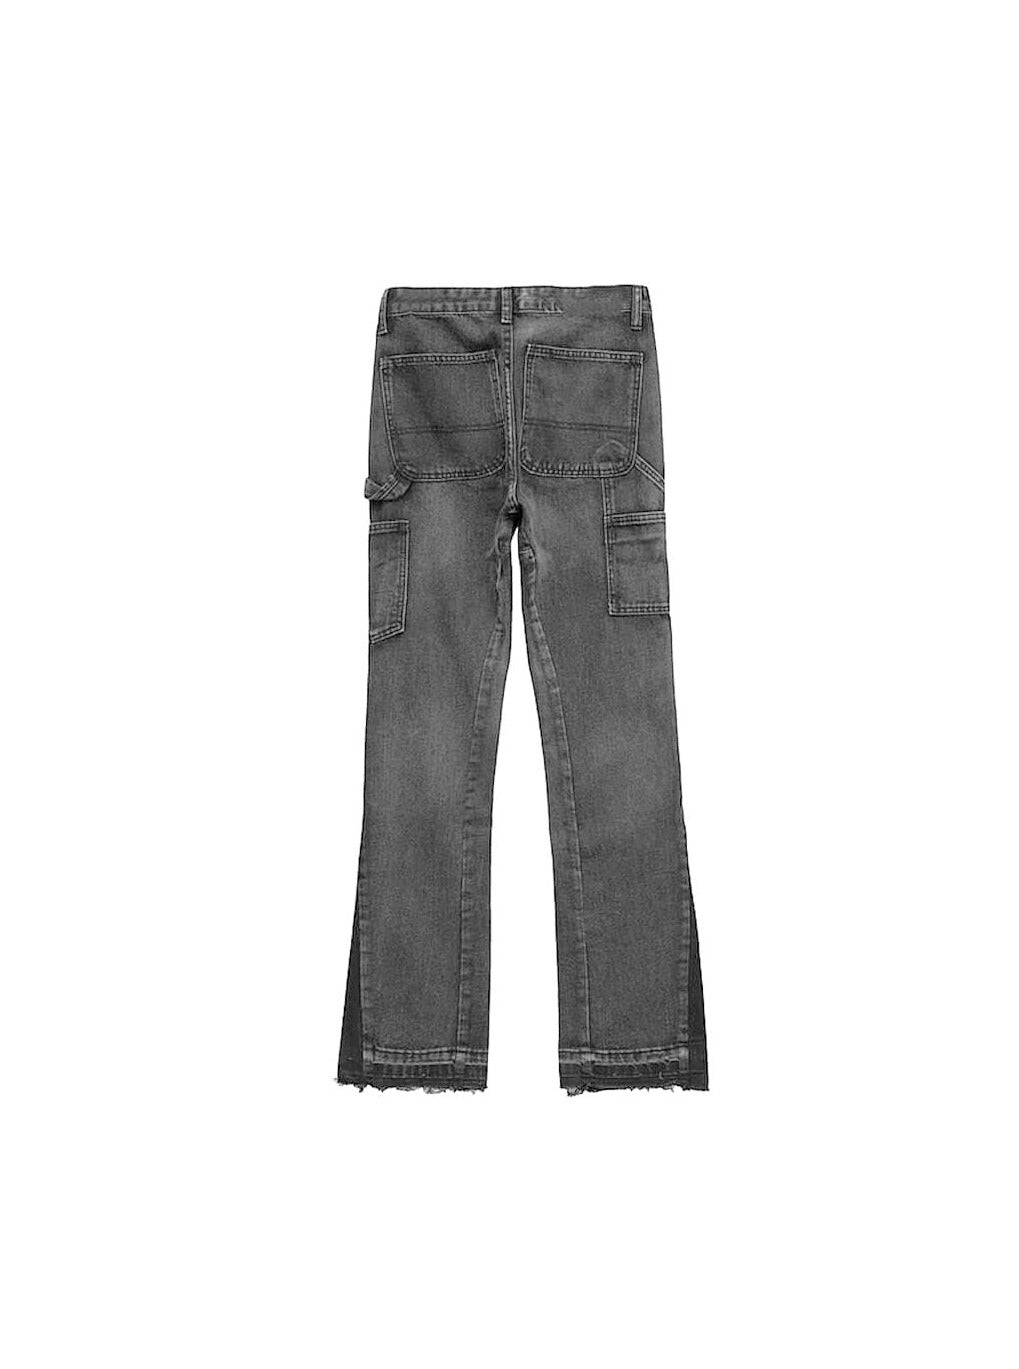 Sole et. Al Metro Flared Carpenter Denim Jeans : Grey